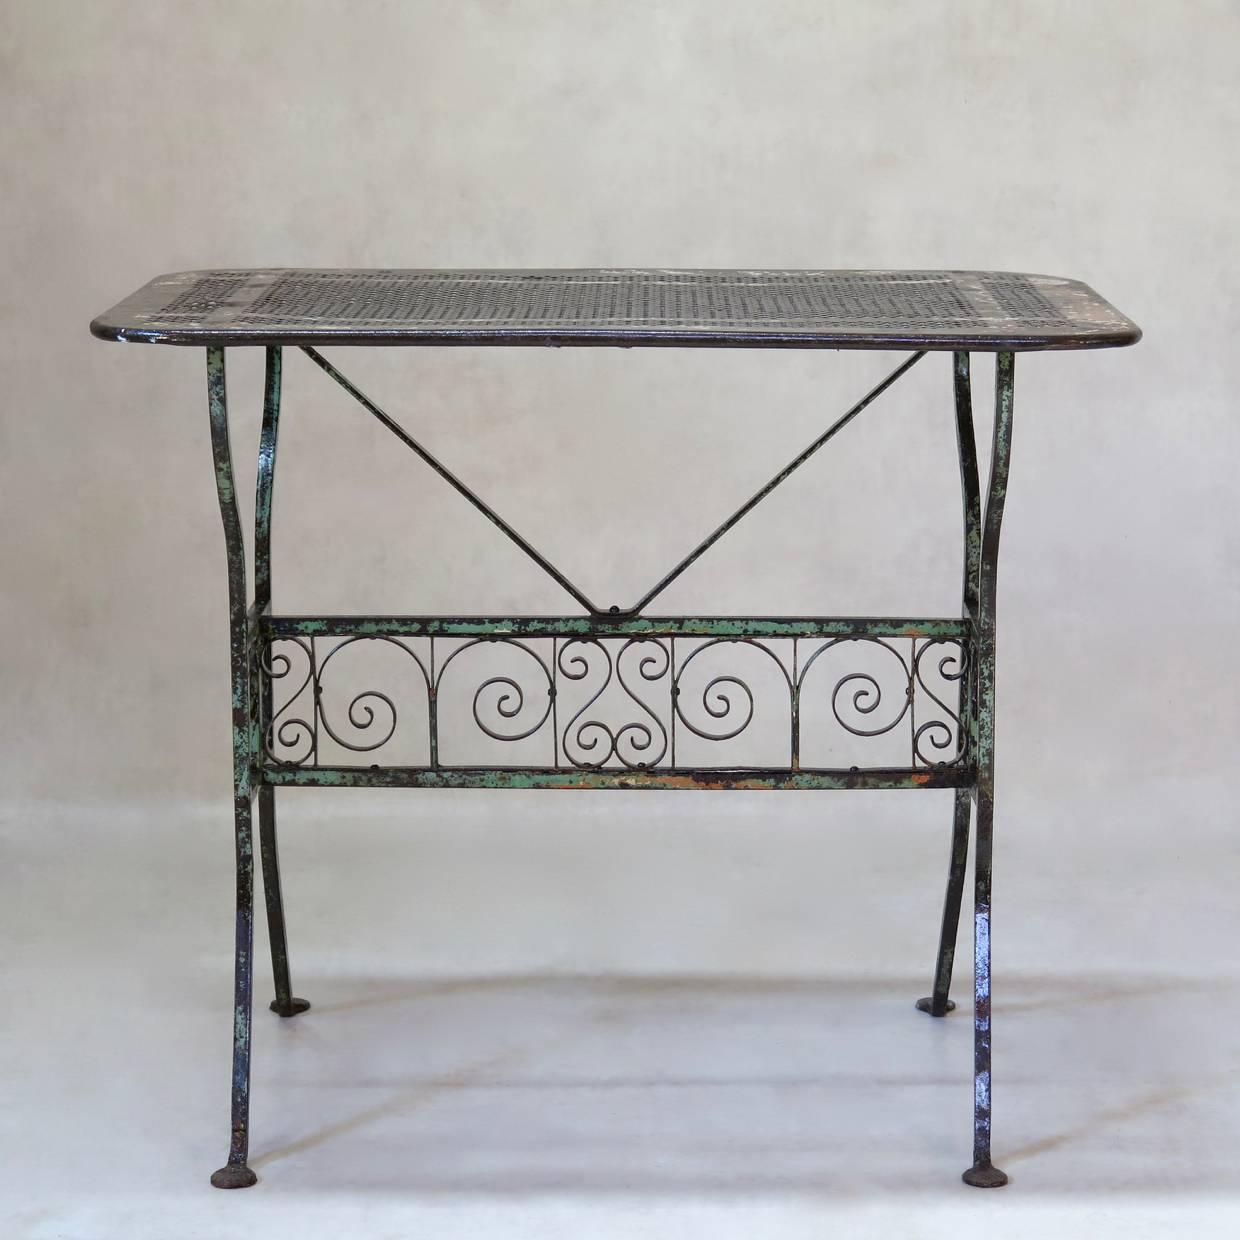 Table en fer forgé inhabituelle et élégante qui a conservé sa peinture orange et verte d'origine. Dessus en tôle à motifs de trèfles.